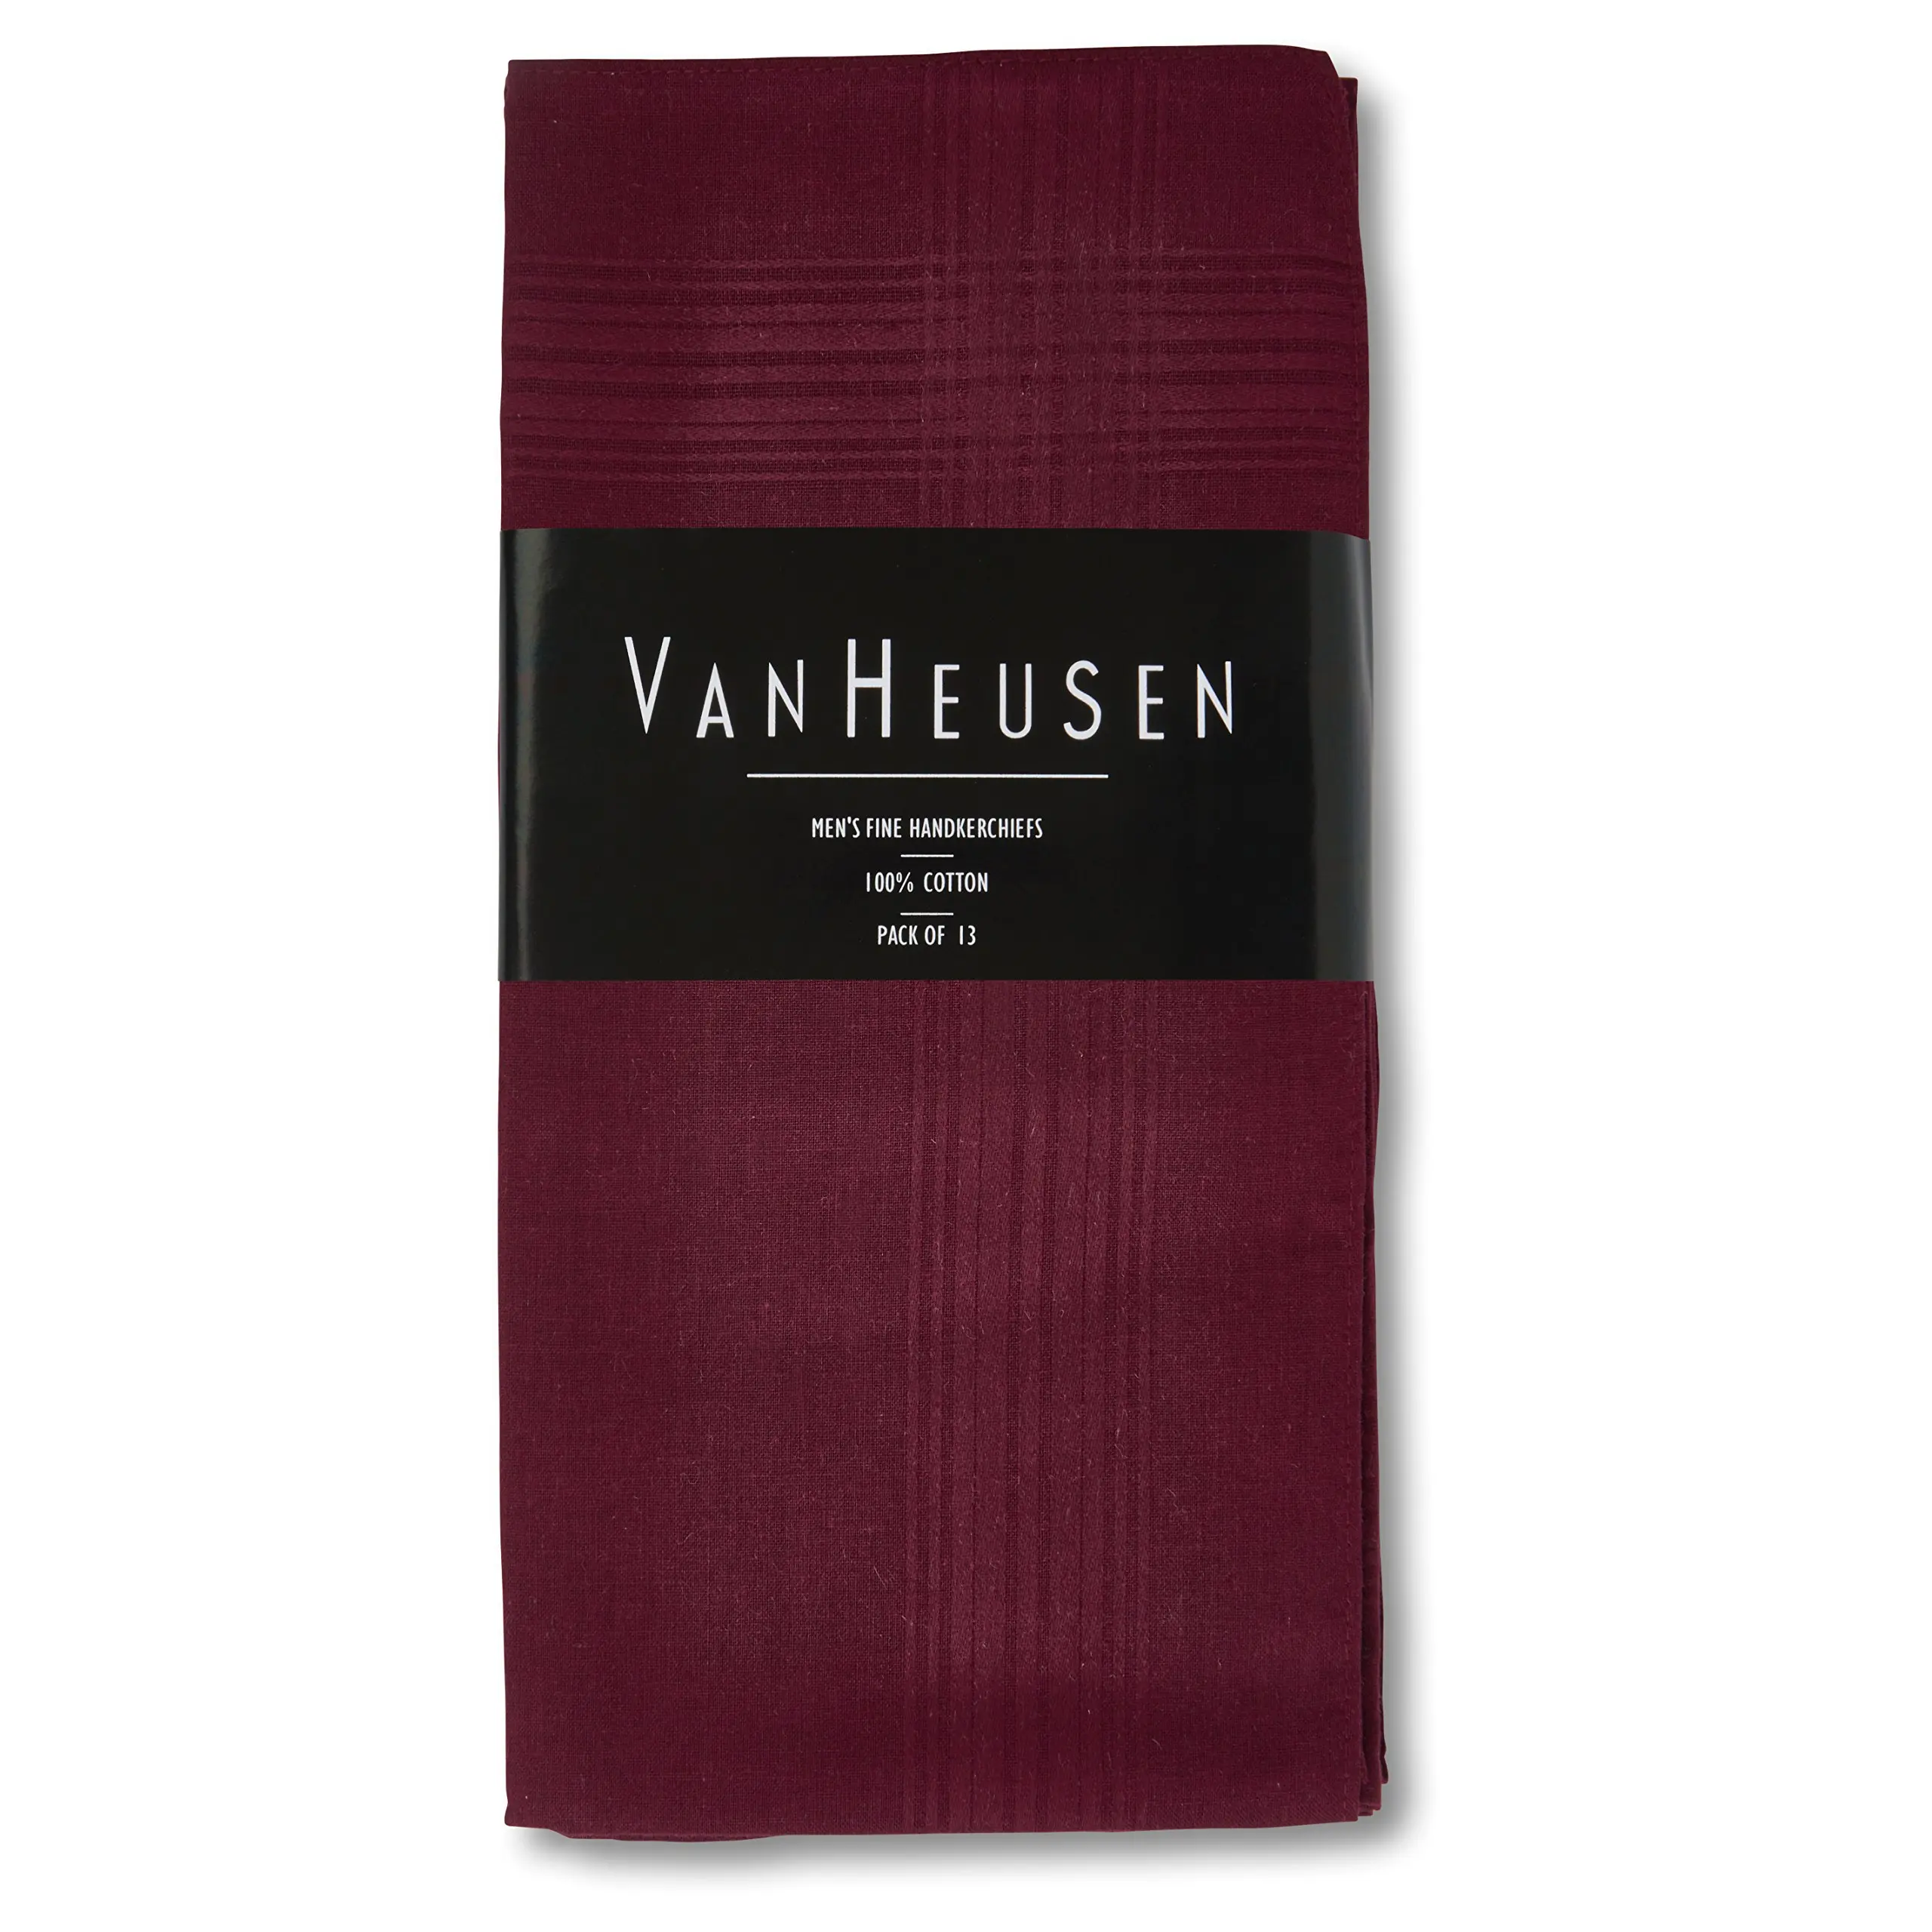 Buy Van Heusen 6 pack Mens Fine Handkerchiefs 100% Cotton in Cheap Price on Alibaba.com